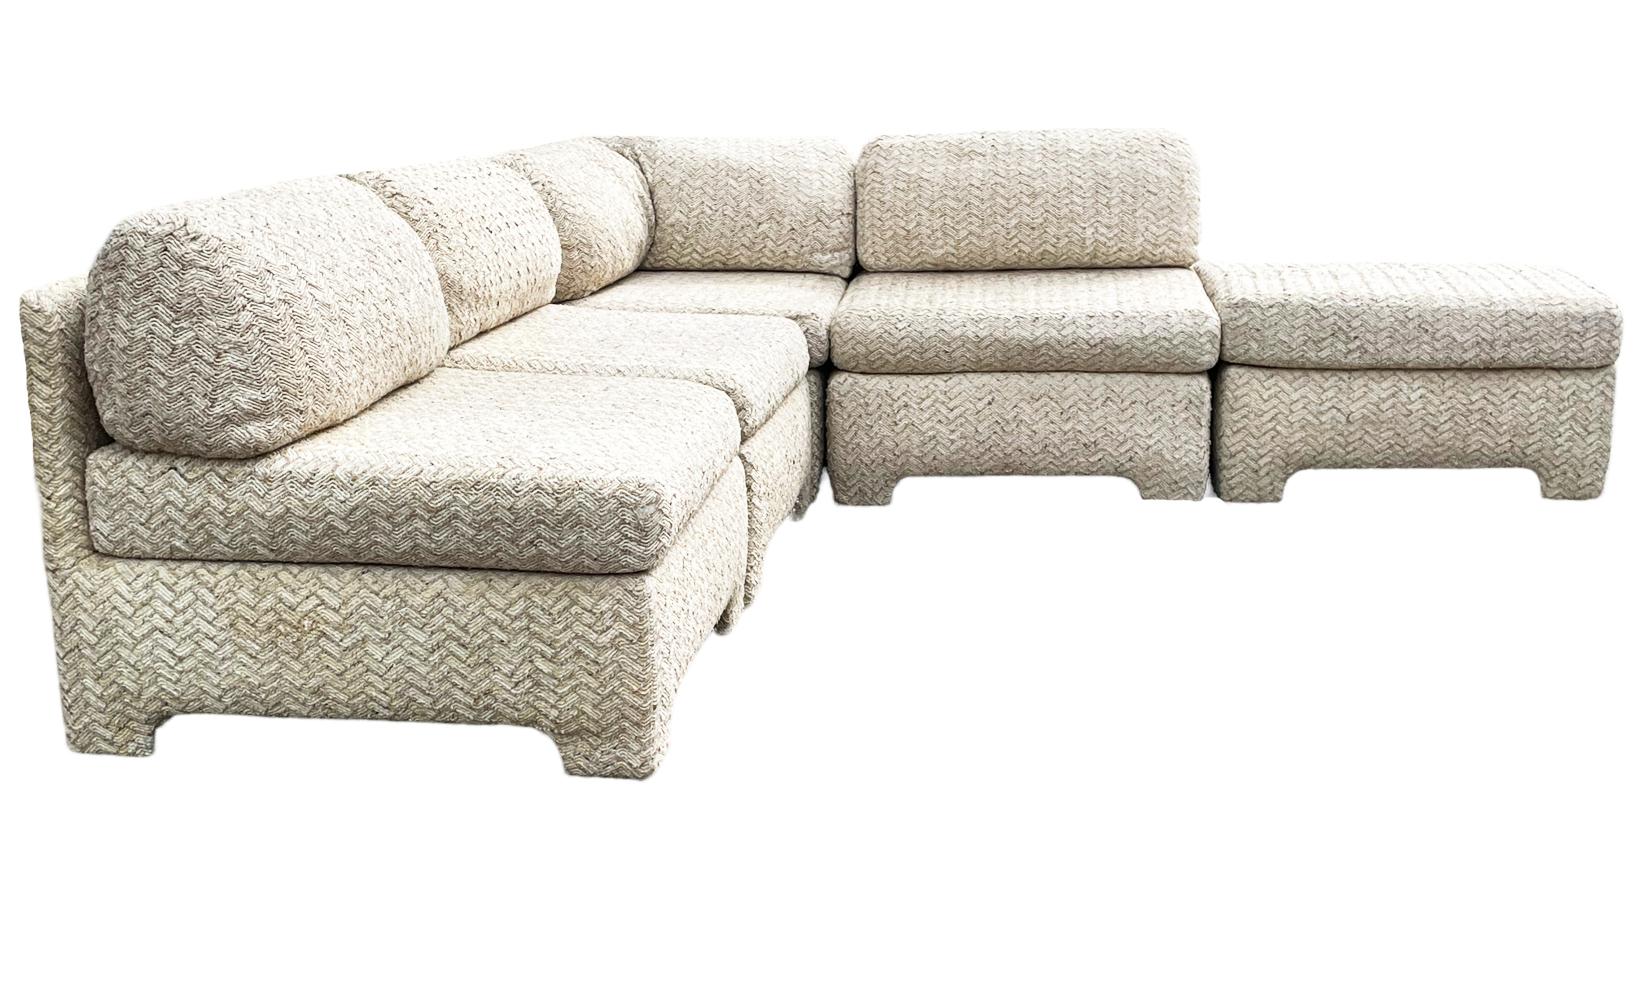 Ein fünfteiliges modulares Vintage-Sofa, das renovierungsbedürftig ist. Designlinien für Tage. Abmessungen unten. 

Einzelner Stuhl B33 T35.5
Eckstück B 34 T35,5
Ottomane B33 T35